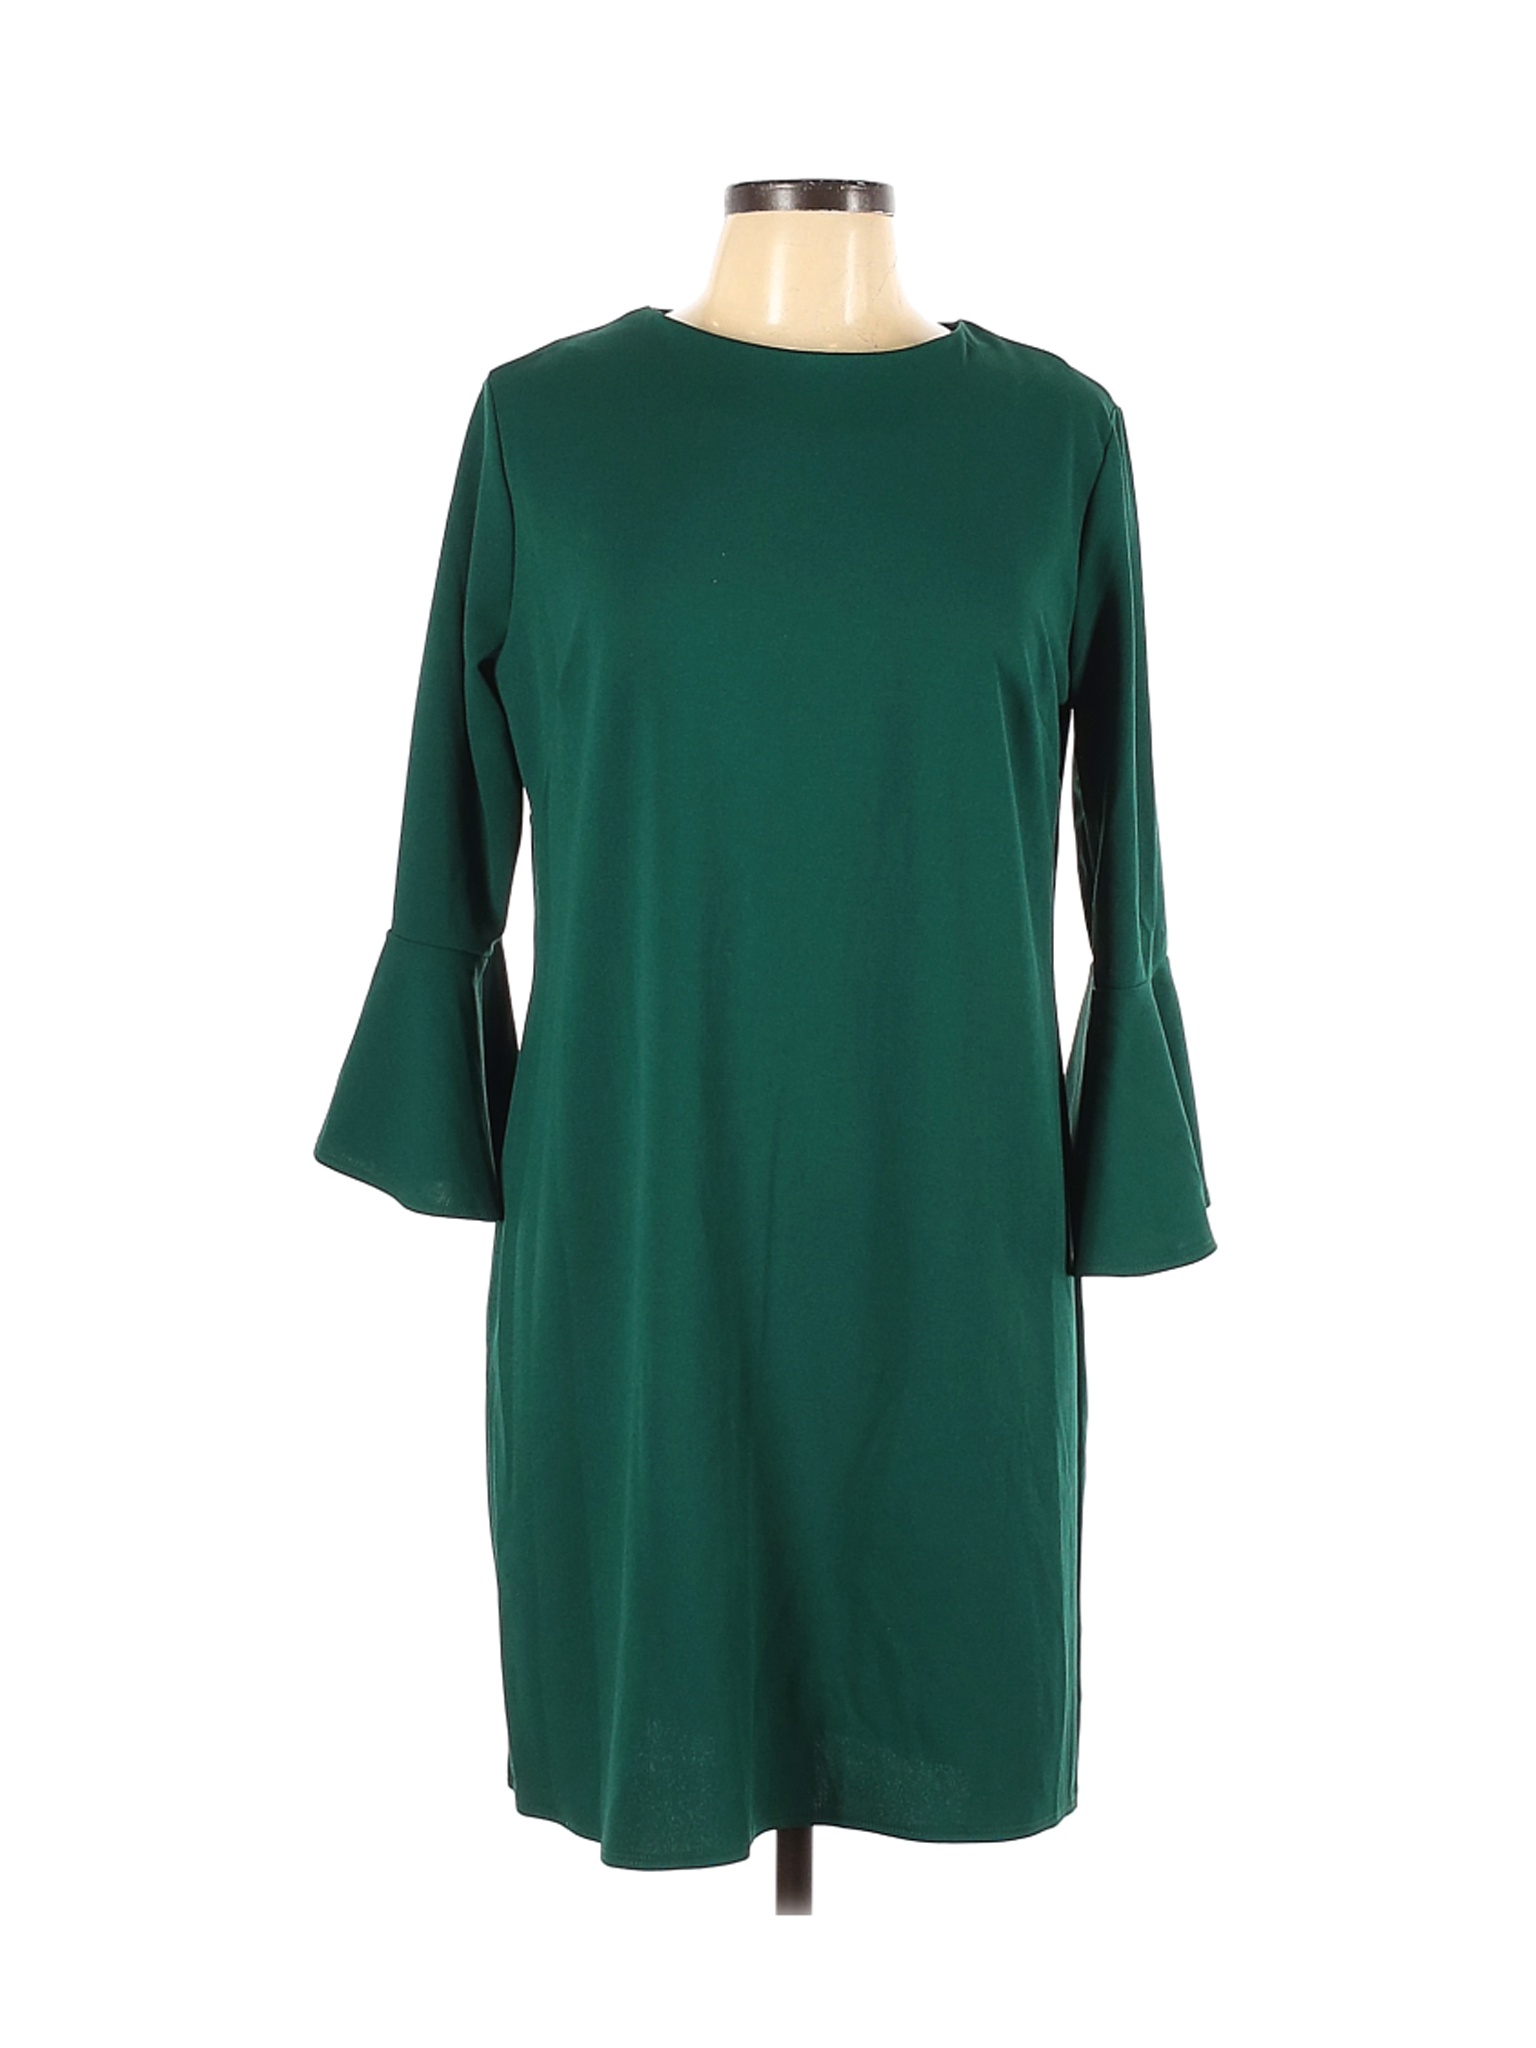 2 Hearts Women Green Casual Dress L | eBay